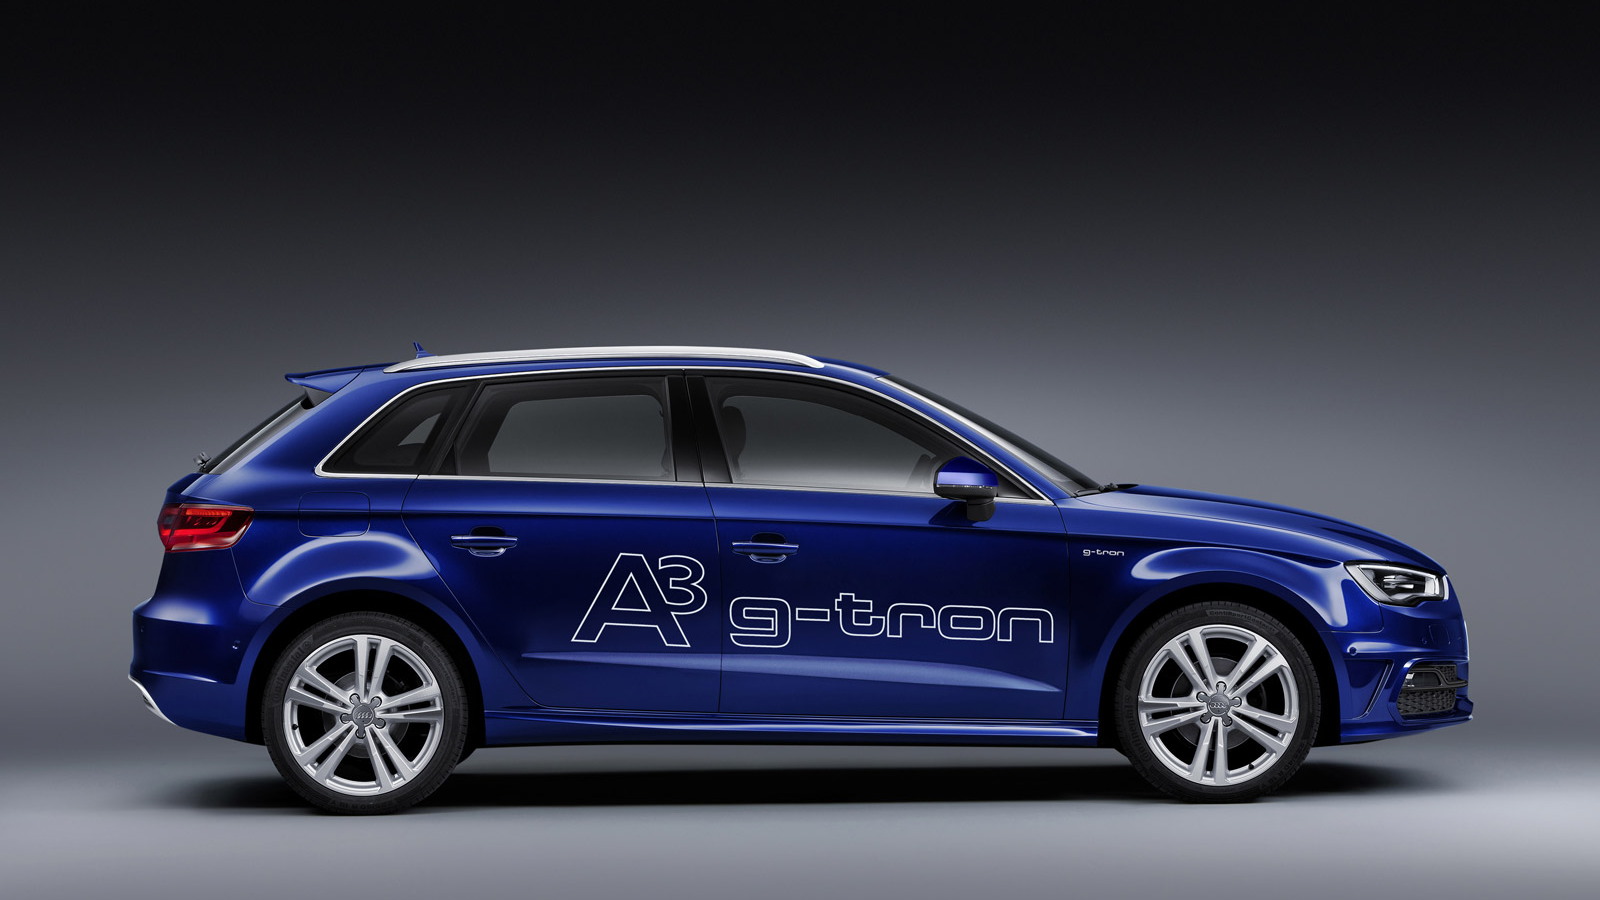 2014 Audi A3 g-tron